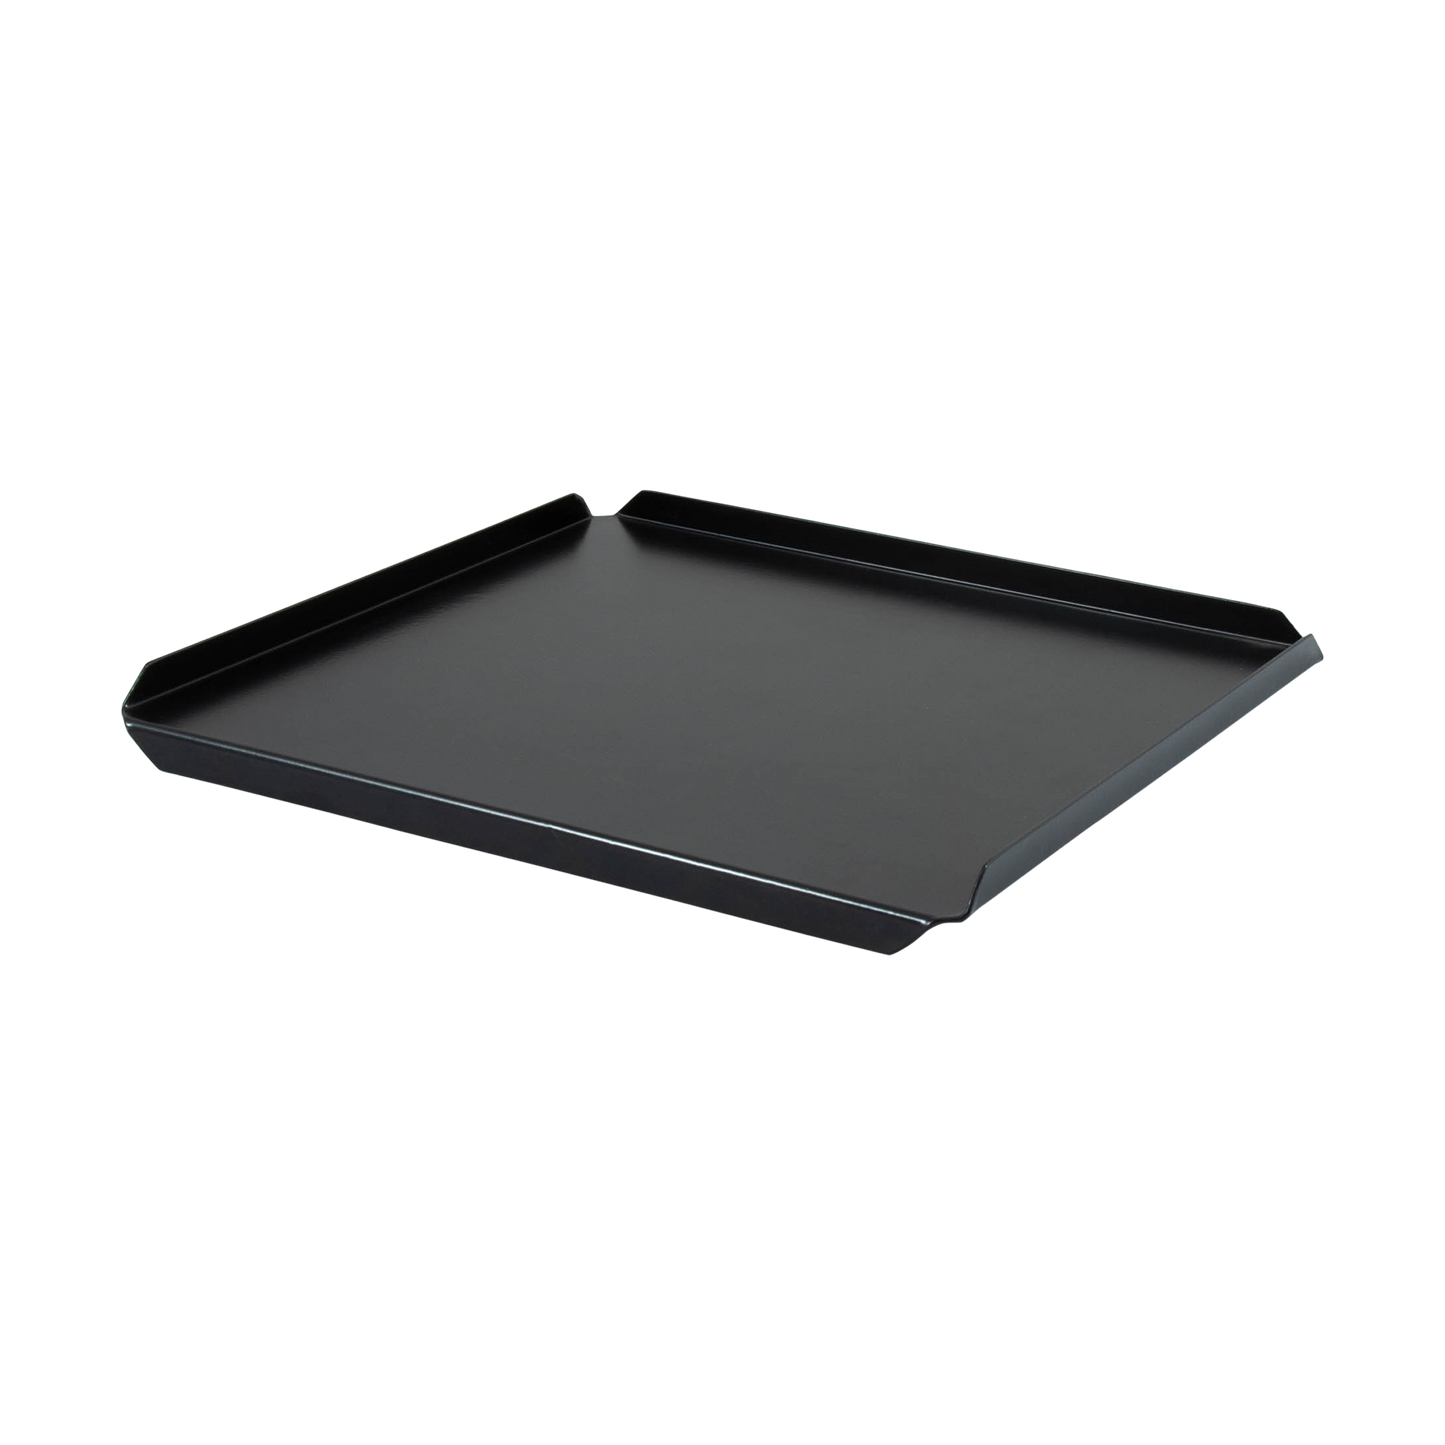 Zwart matte gebaksplaat 30x30 cm met 3 opgezette kanten en 1 kant naar beneden